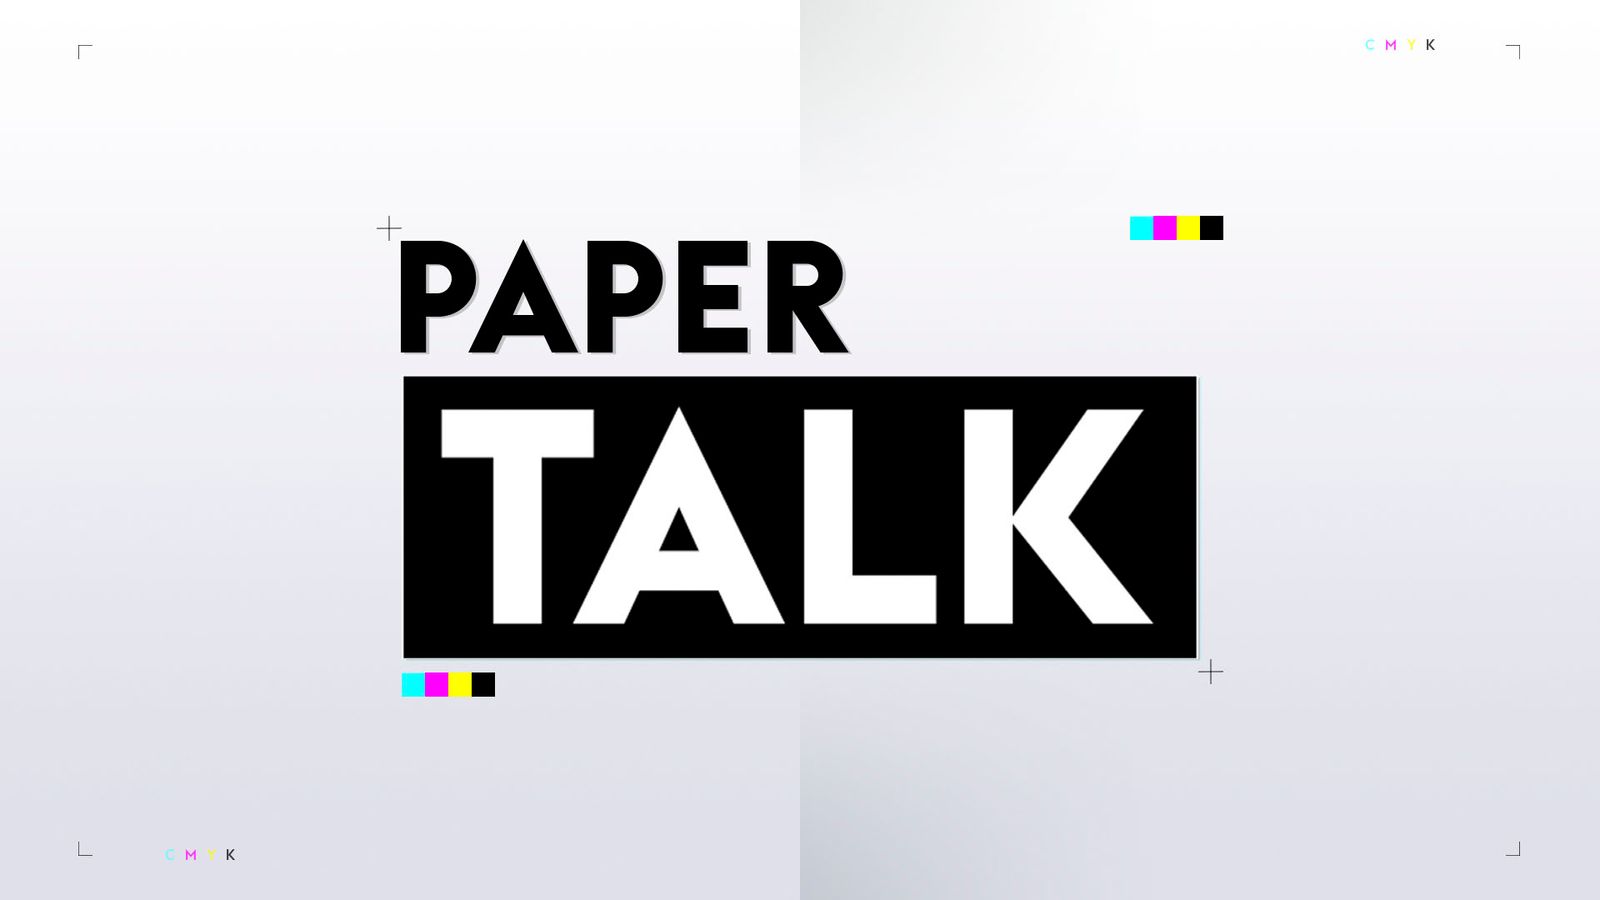 แมนฯ ยูไนเต็ด ตัดสินใจไม่เรียกตัวเลือกขยายสัญญาของ ราฟาเอล วาราน – Paper Talk |  ข่าวฟุตบอล